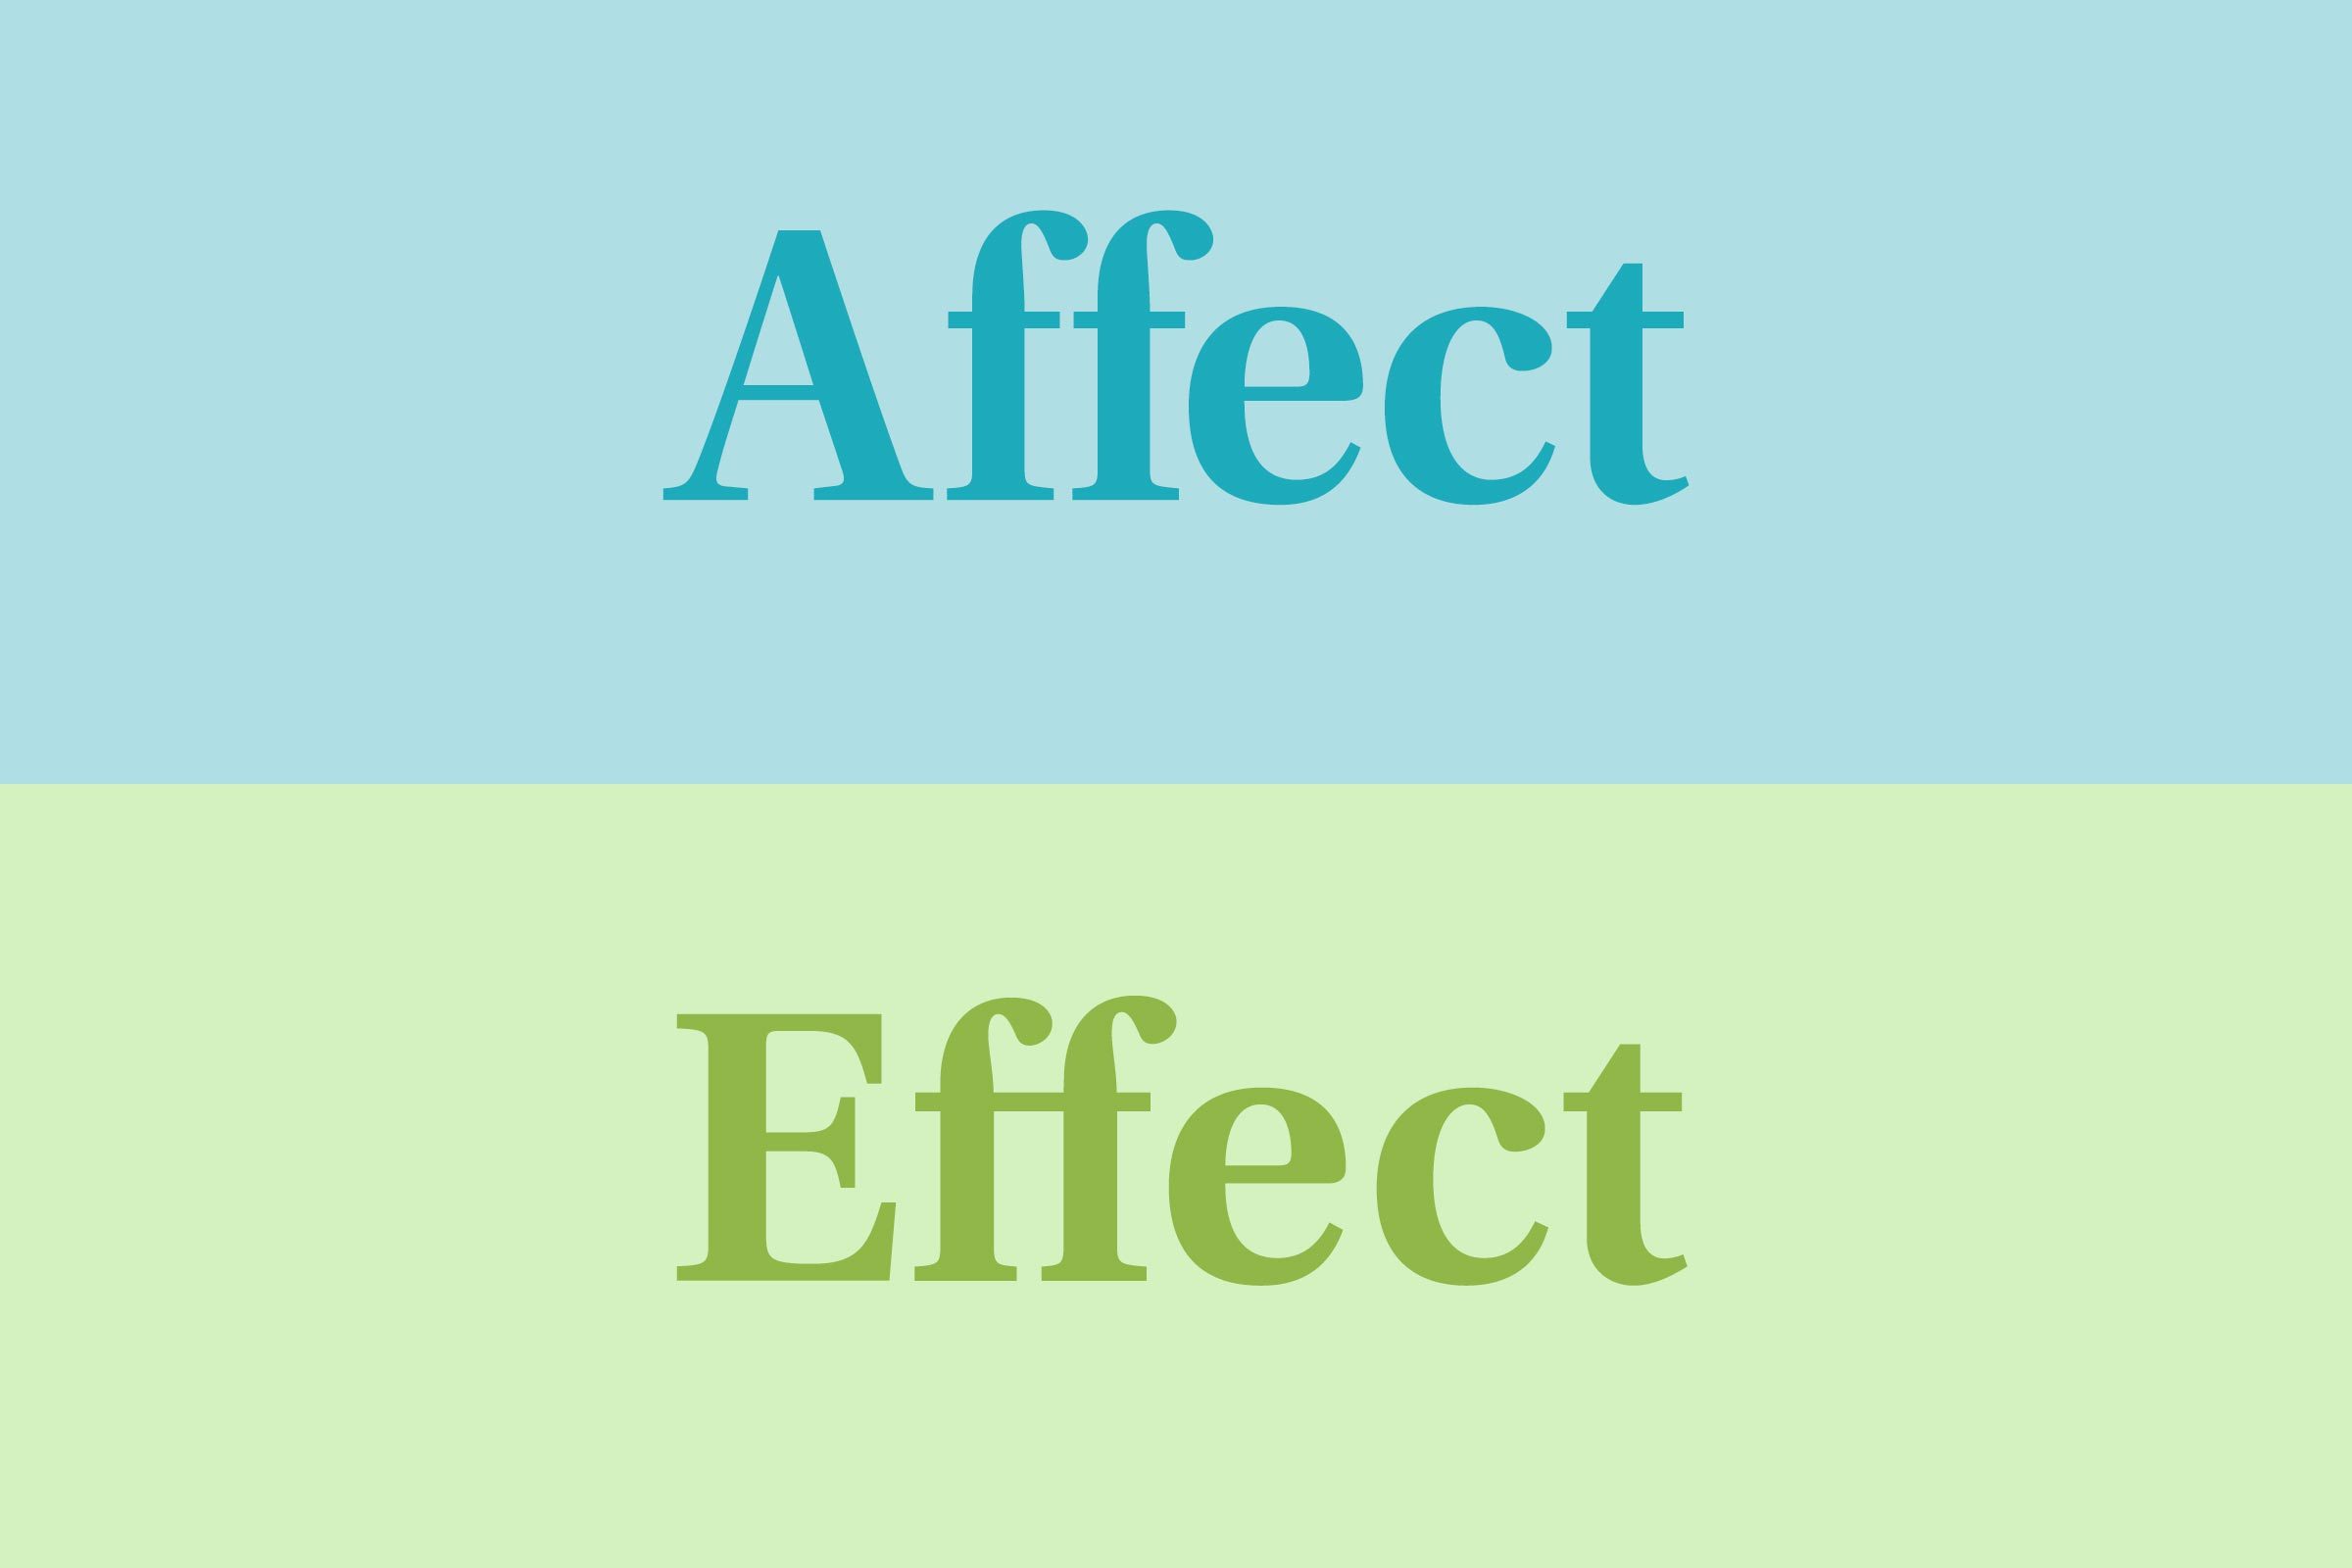 Affect vs. effect